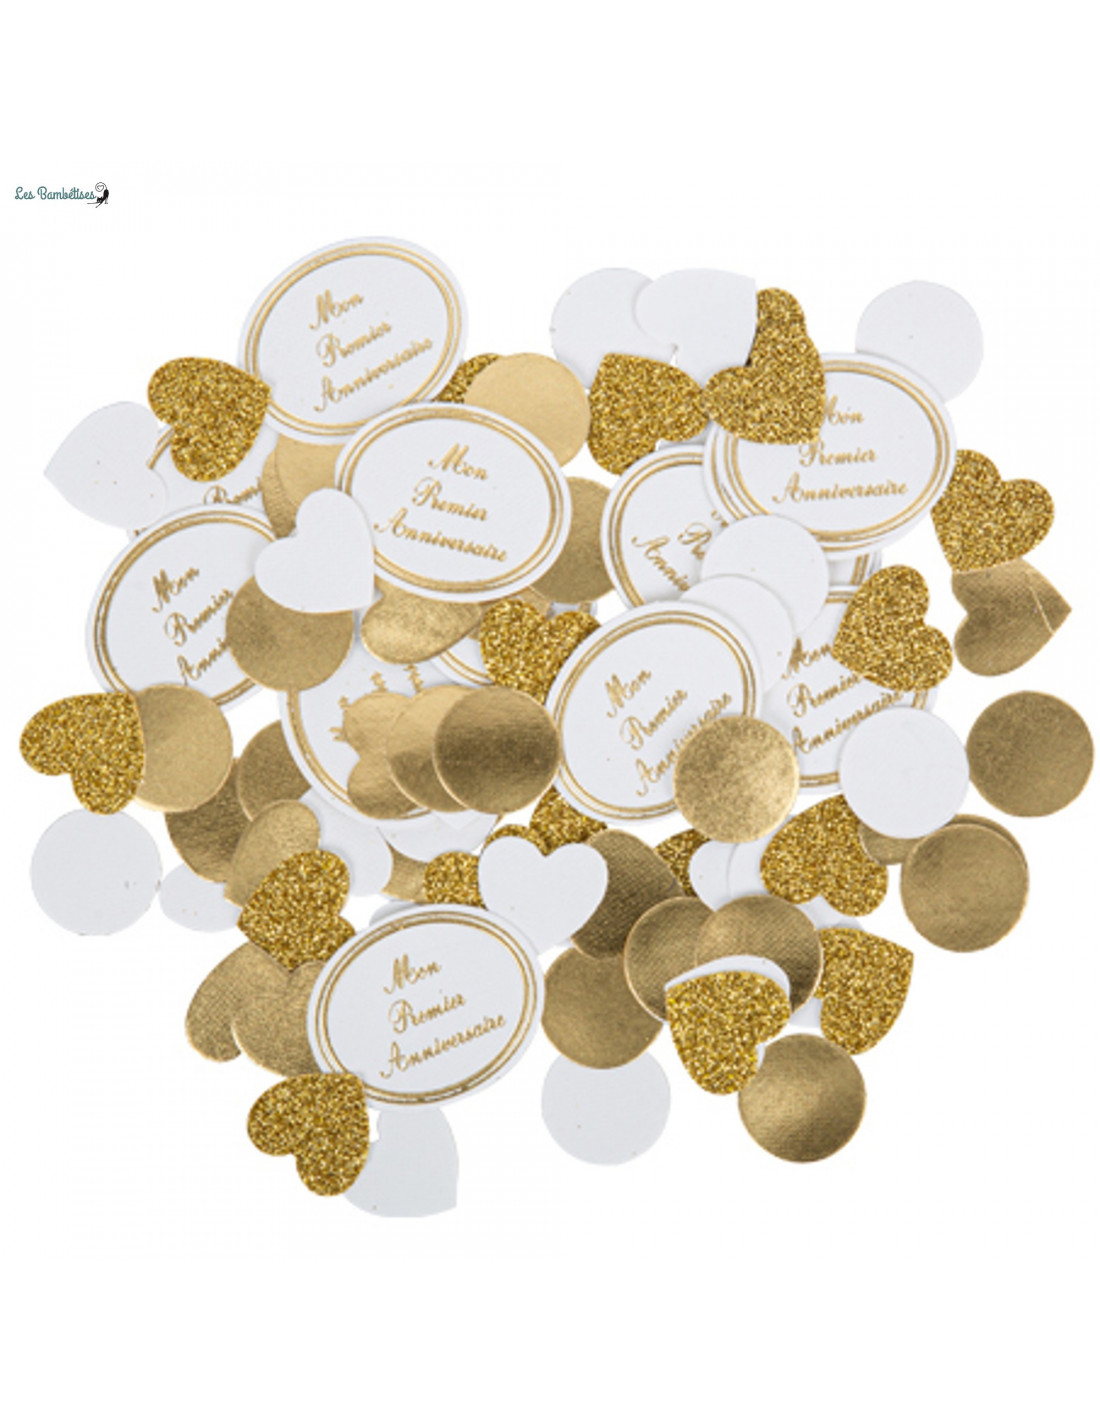 100 Confettis Premier Anniversaire Blanc & Or - Les Bambetises